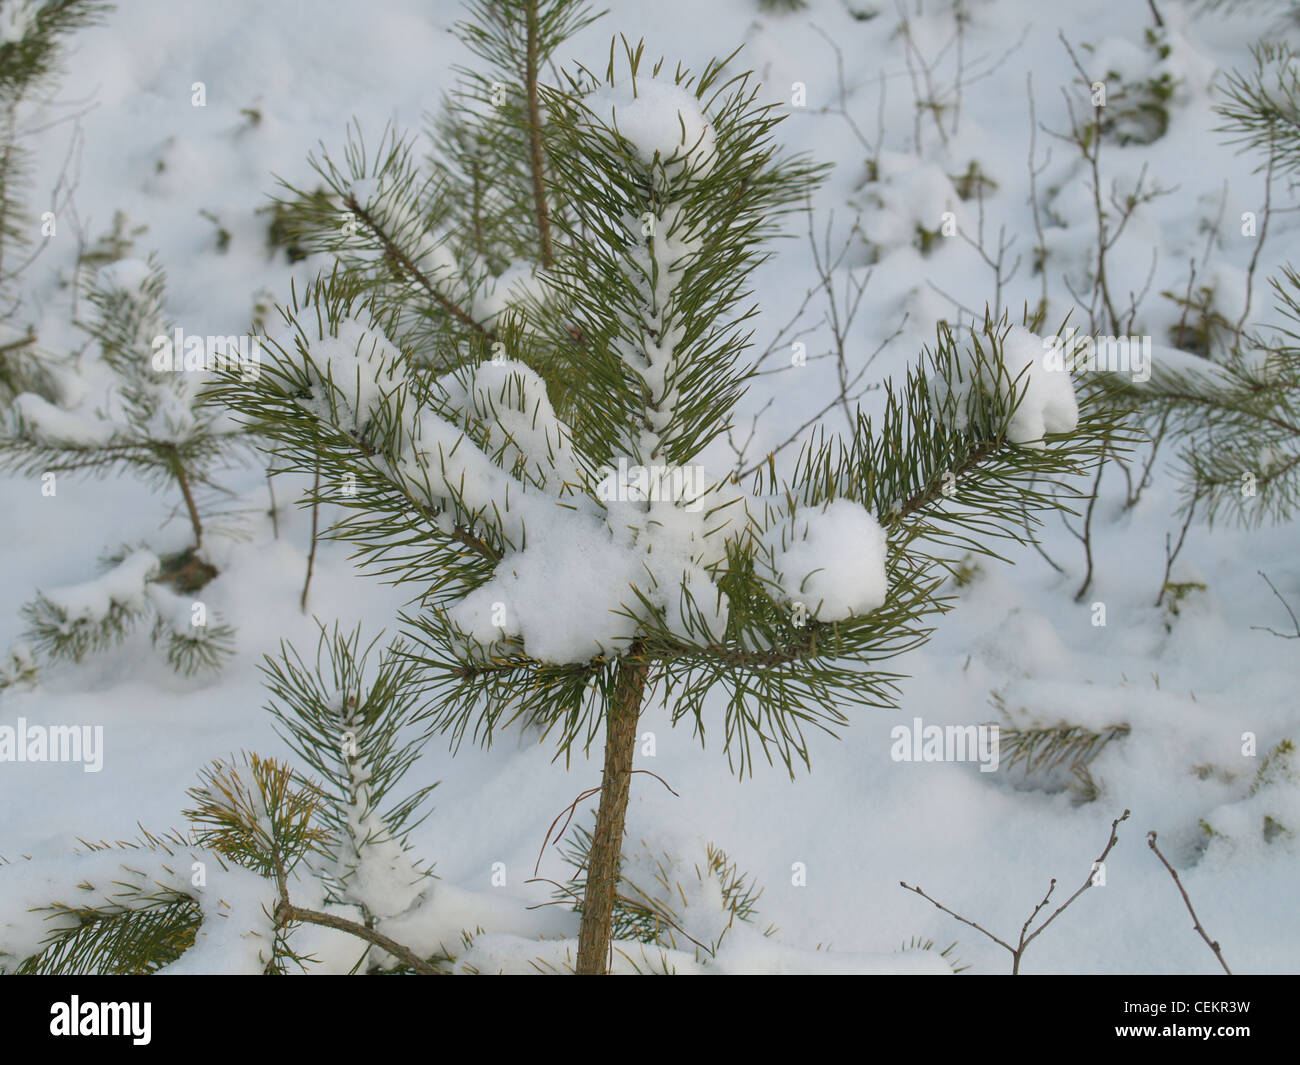 En pin avec neige / Pinus / Kiefer mit Schnee Banque D'Images